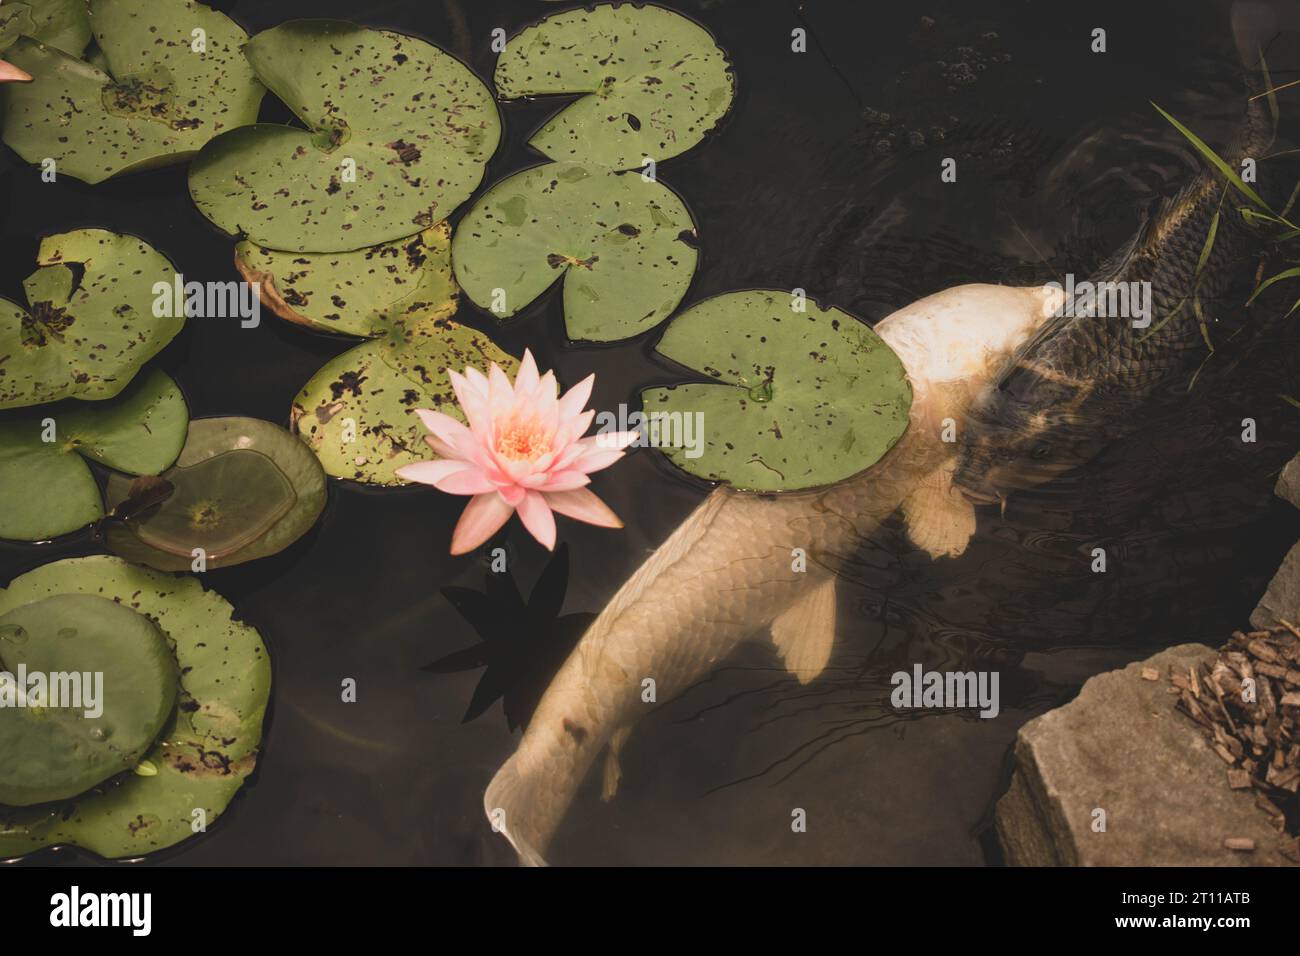 Pesci Koi bianchi e neri che nuotano uno accanto all'altro in uno stagno con un bellissimo fiore di giglio e coppette di giglio. Foto Stock